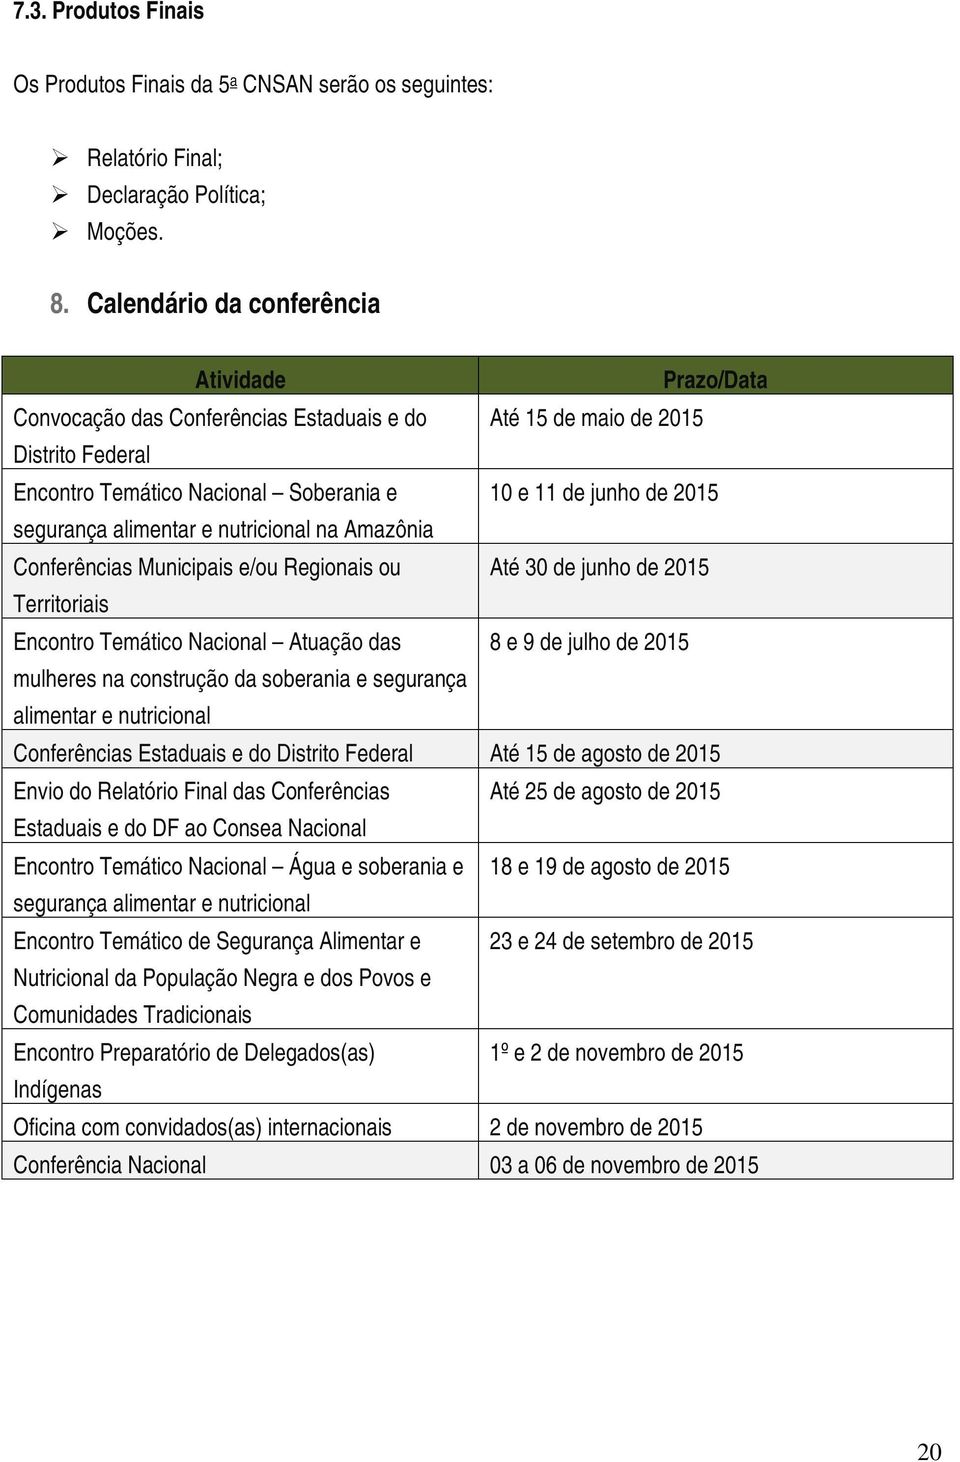 segurança alimentar e nutricional na Amazônia Conferências Municipais e/ou Regionais ou Até 30 de junho de 2015 Territoriais Encontro Temático Nacional Atuação das 8 e 9 de julho de 2015 mulheres na